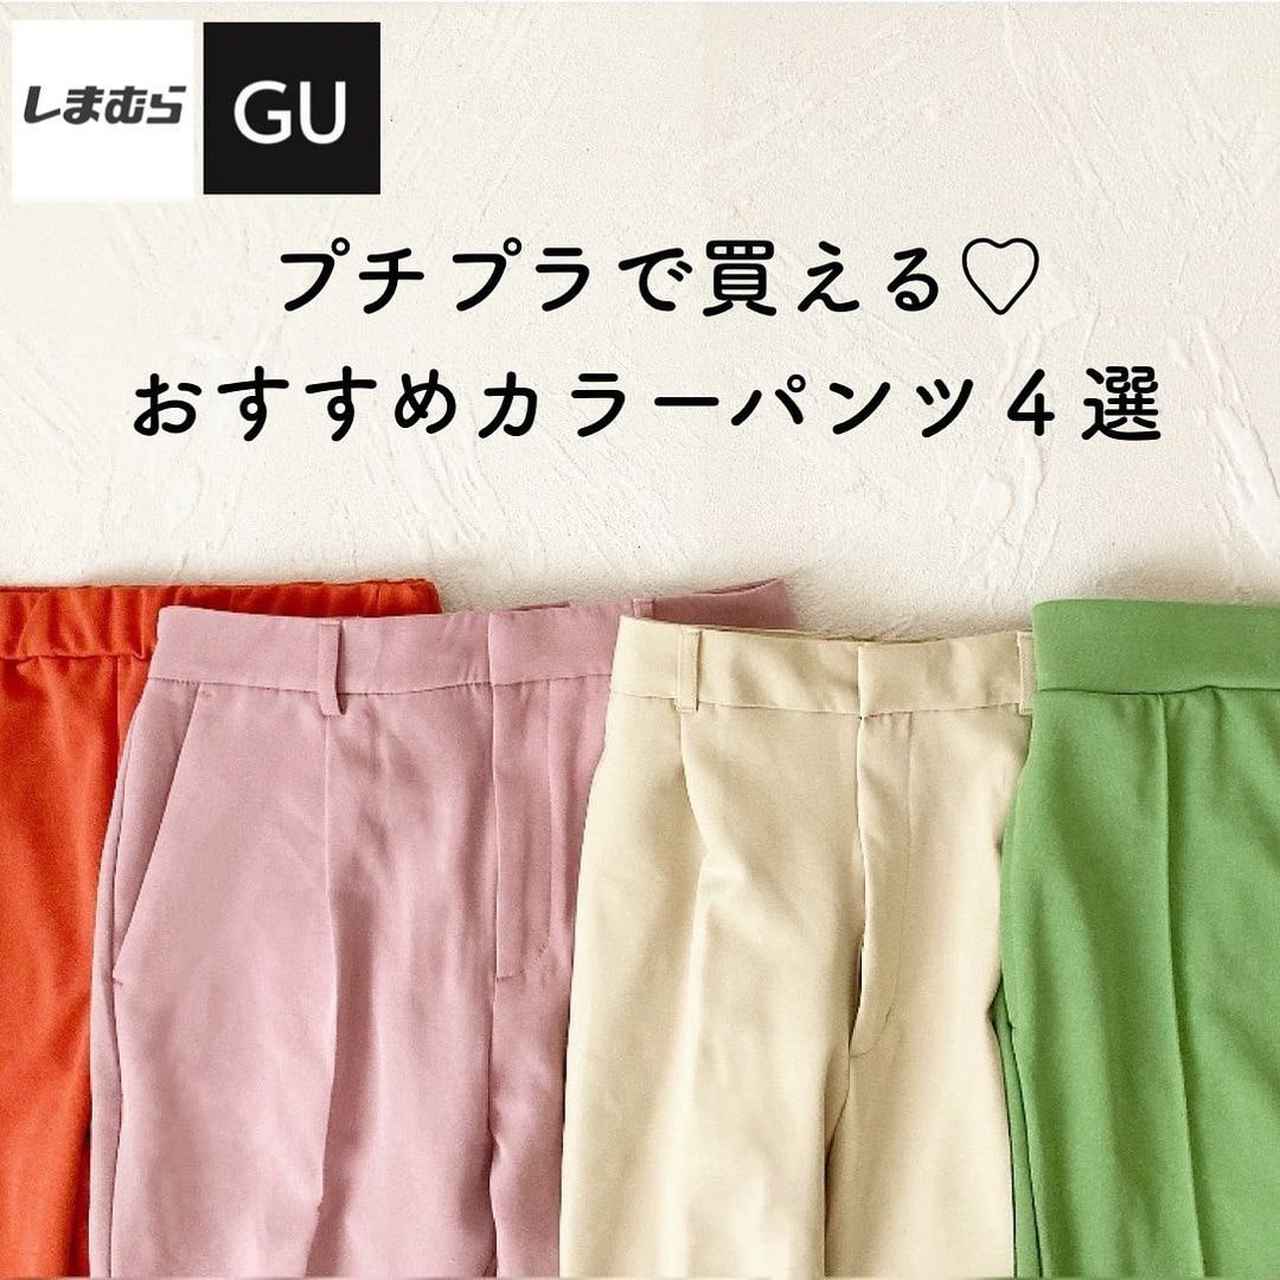 GU & しまむら】1000円台パンツ4選 - モデルプレス